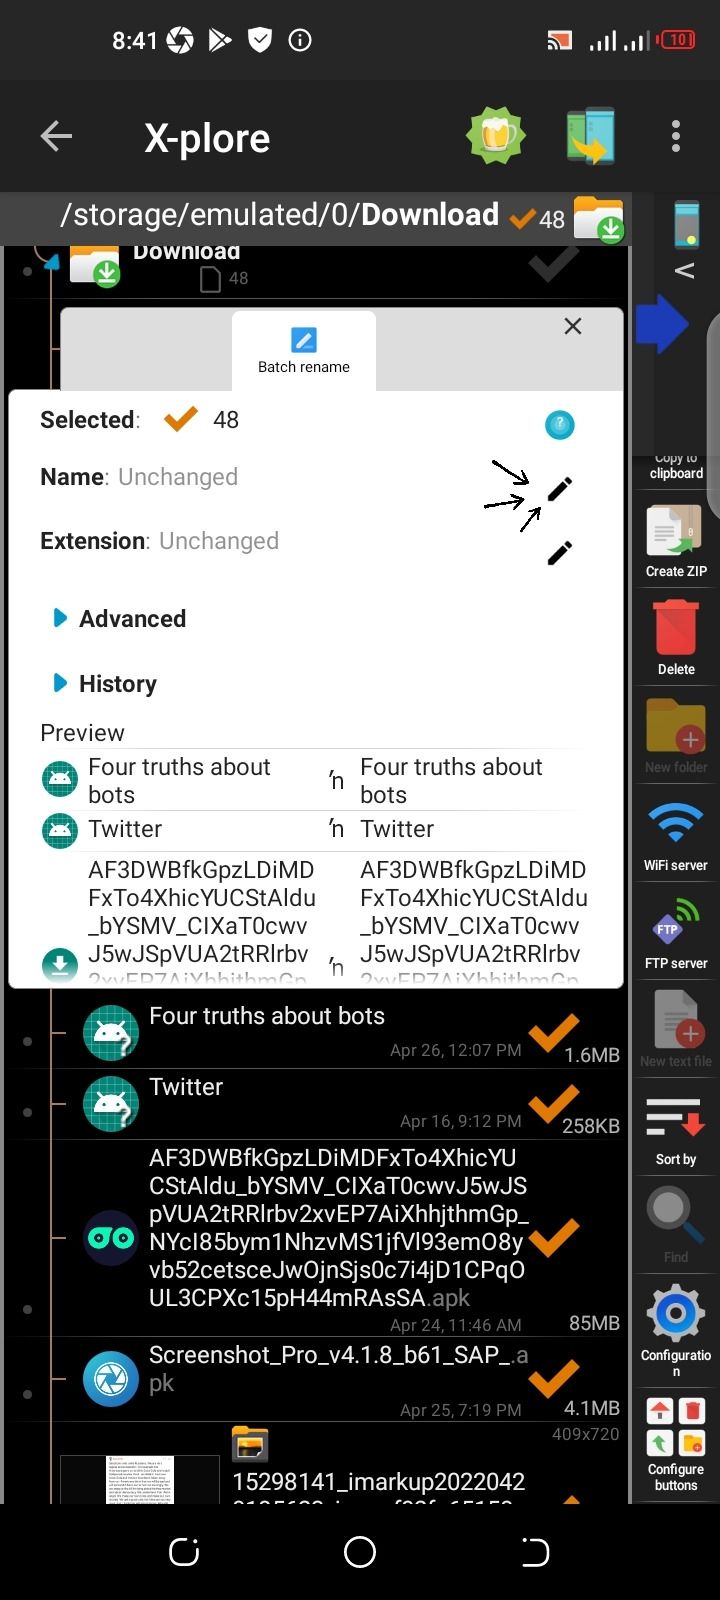 Screenshot of X-plore app